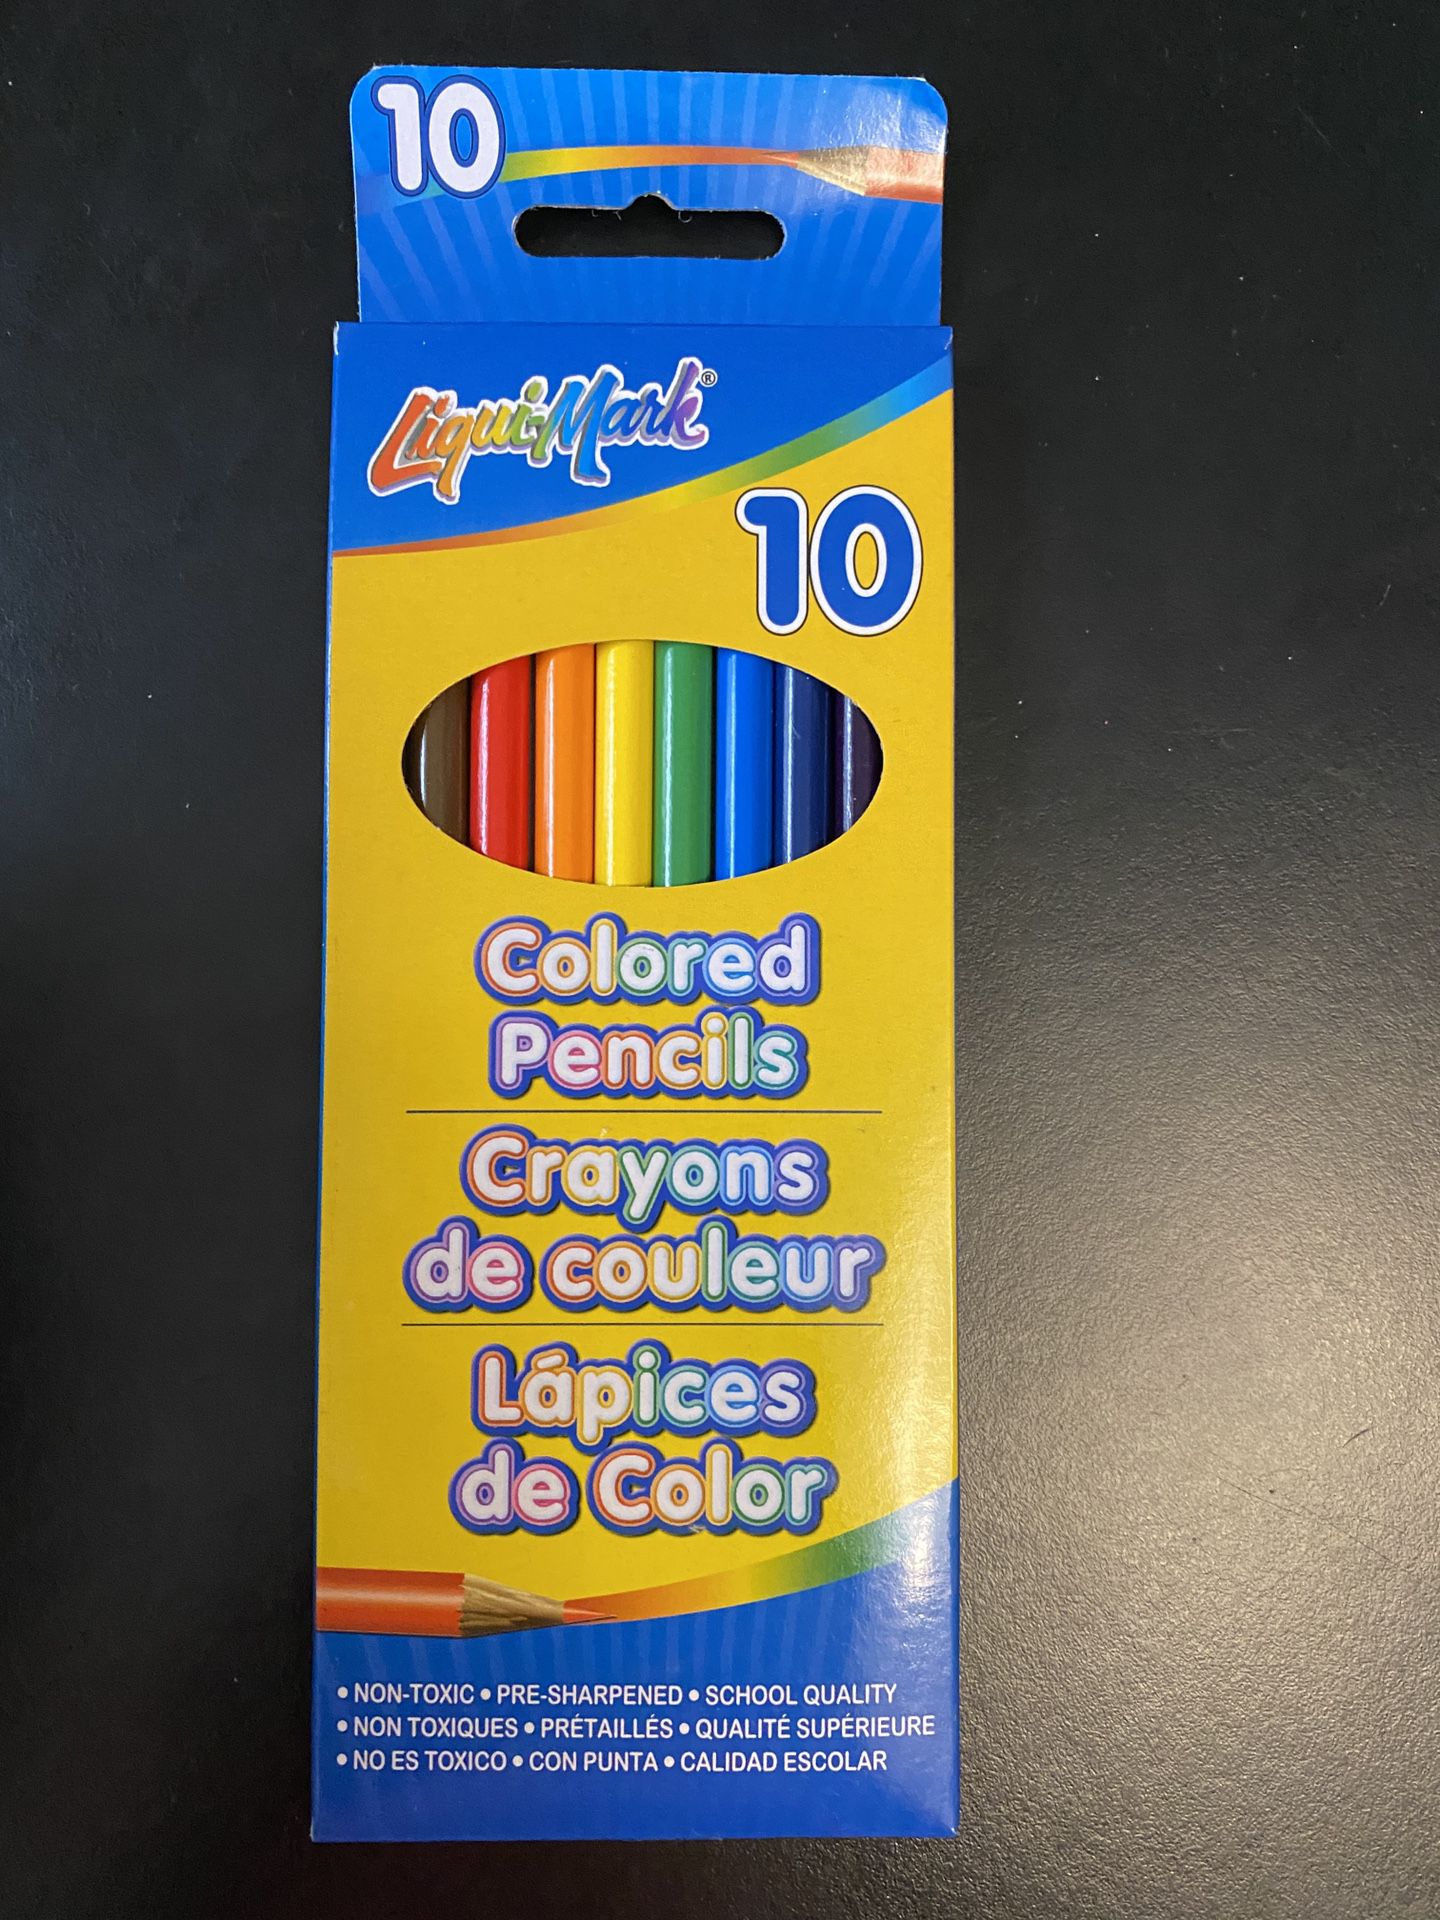 LiquiMark 10 Colored Pencils